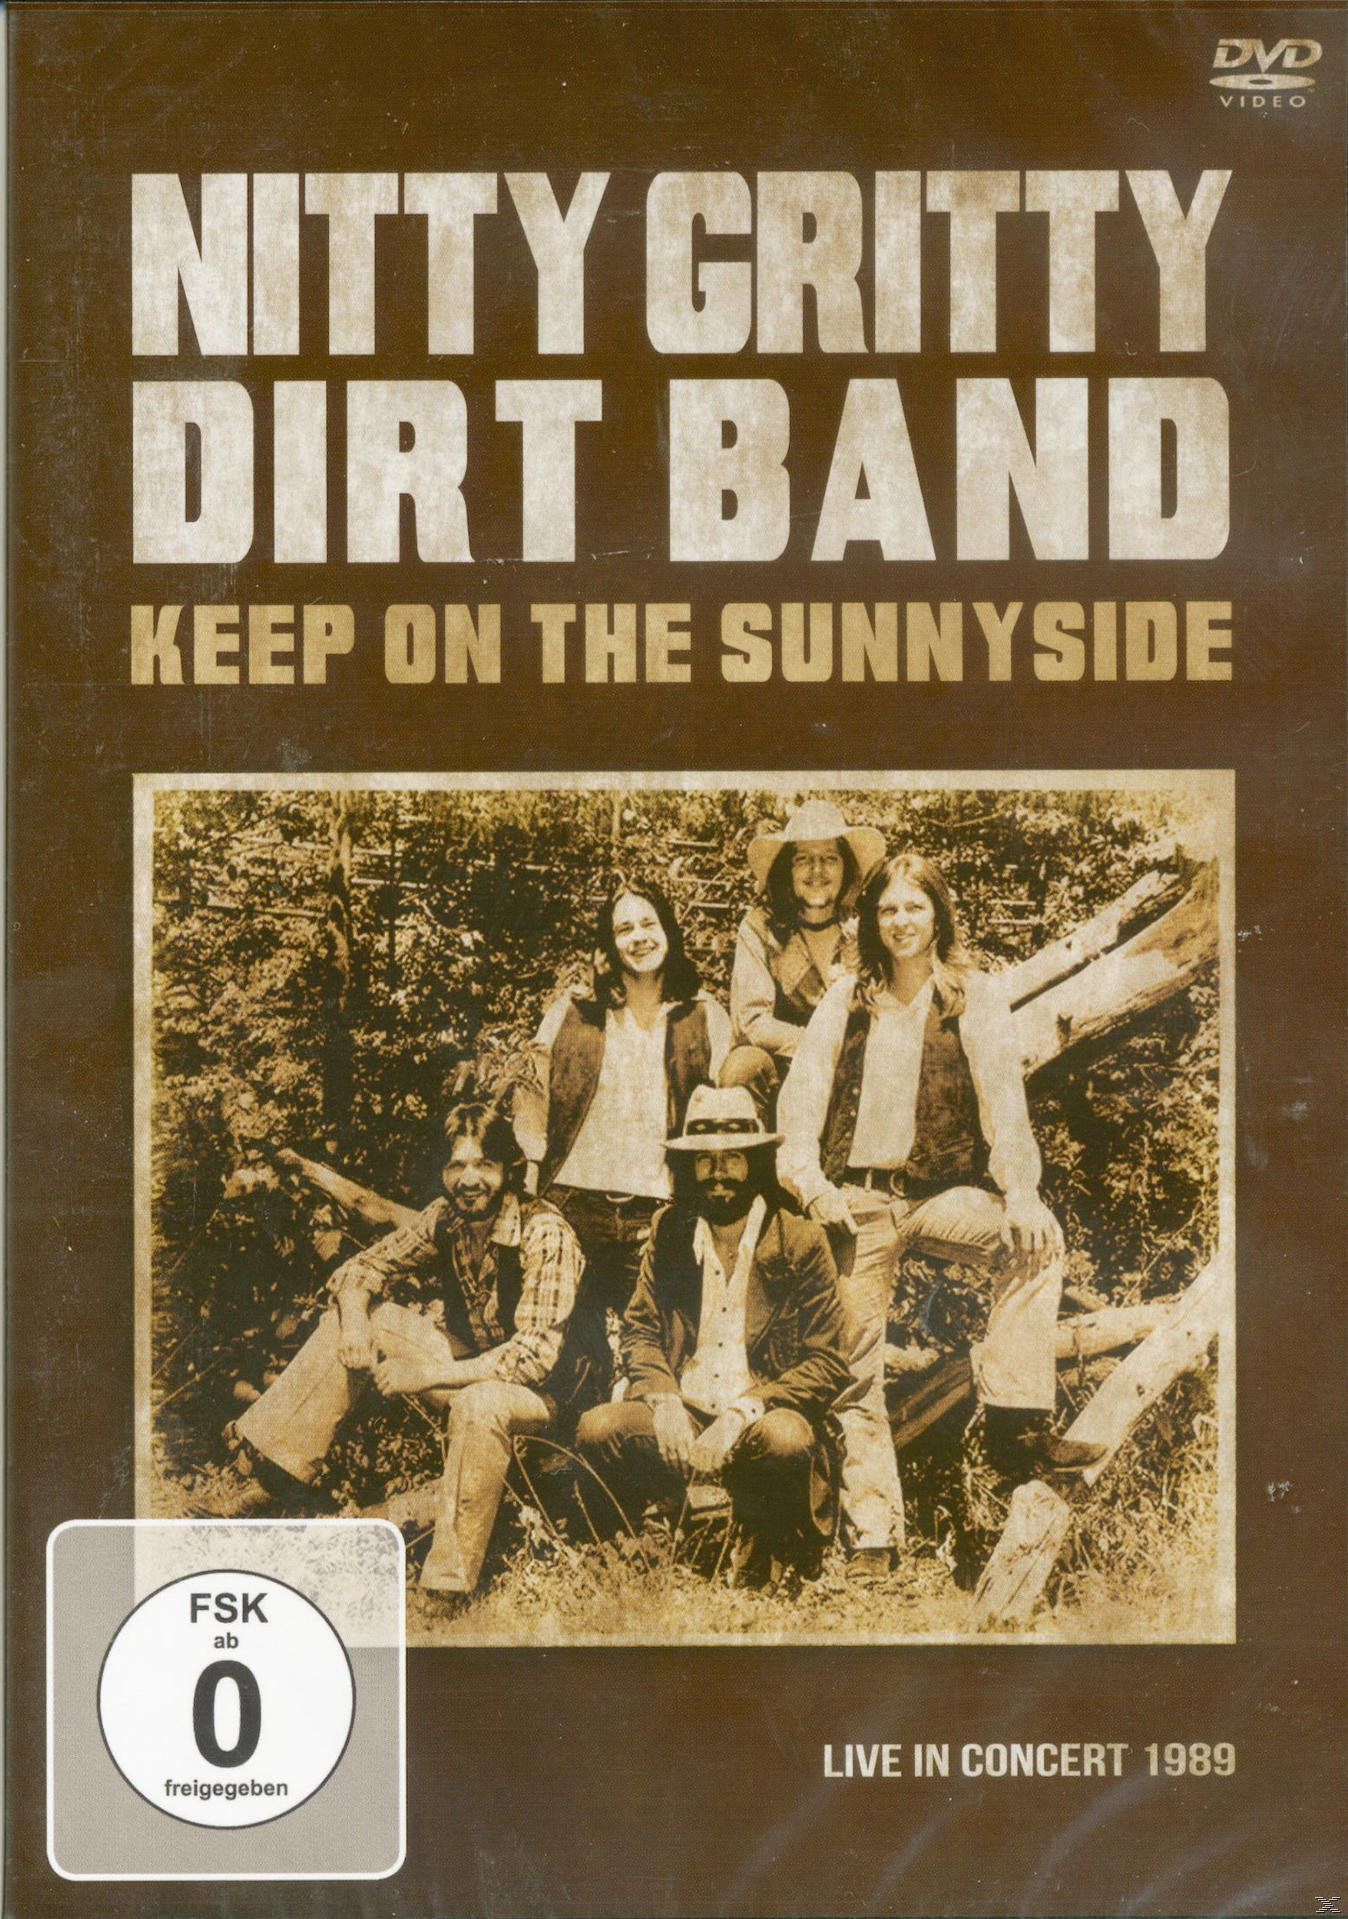 Single The Maxi Keep Mini On Sunnyside Disc